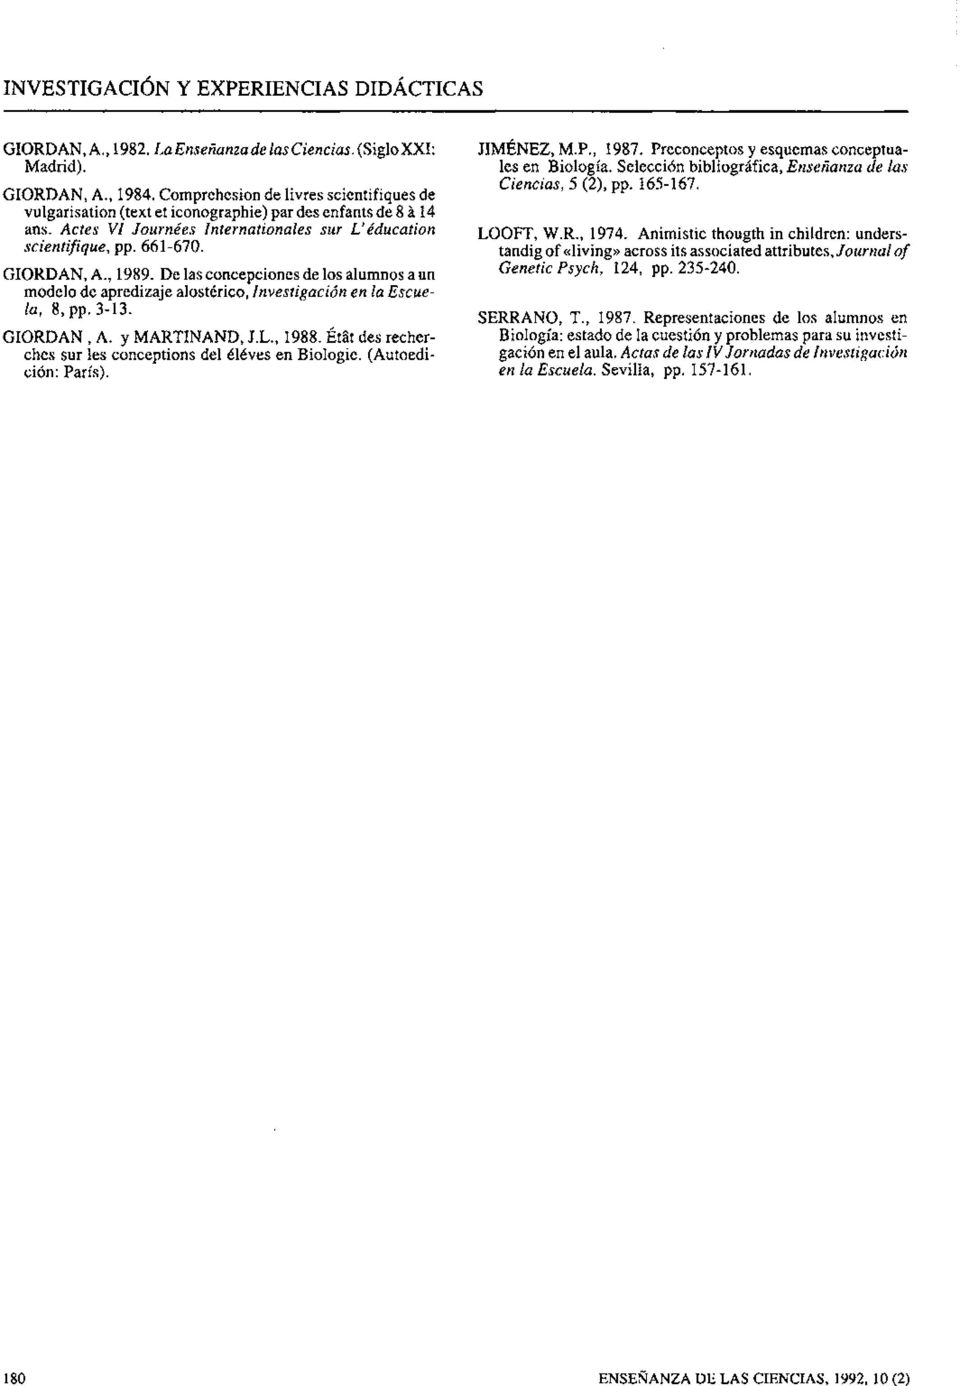 De las concepciones de los alumnos a un modelo de apredizaje alostérico, Investigación en la Escuela, 8, pp. 3-13. GIORBAN, A. y MARTINAND, J.L., 1988.